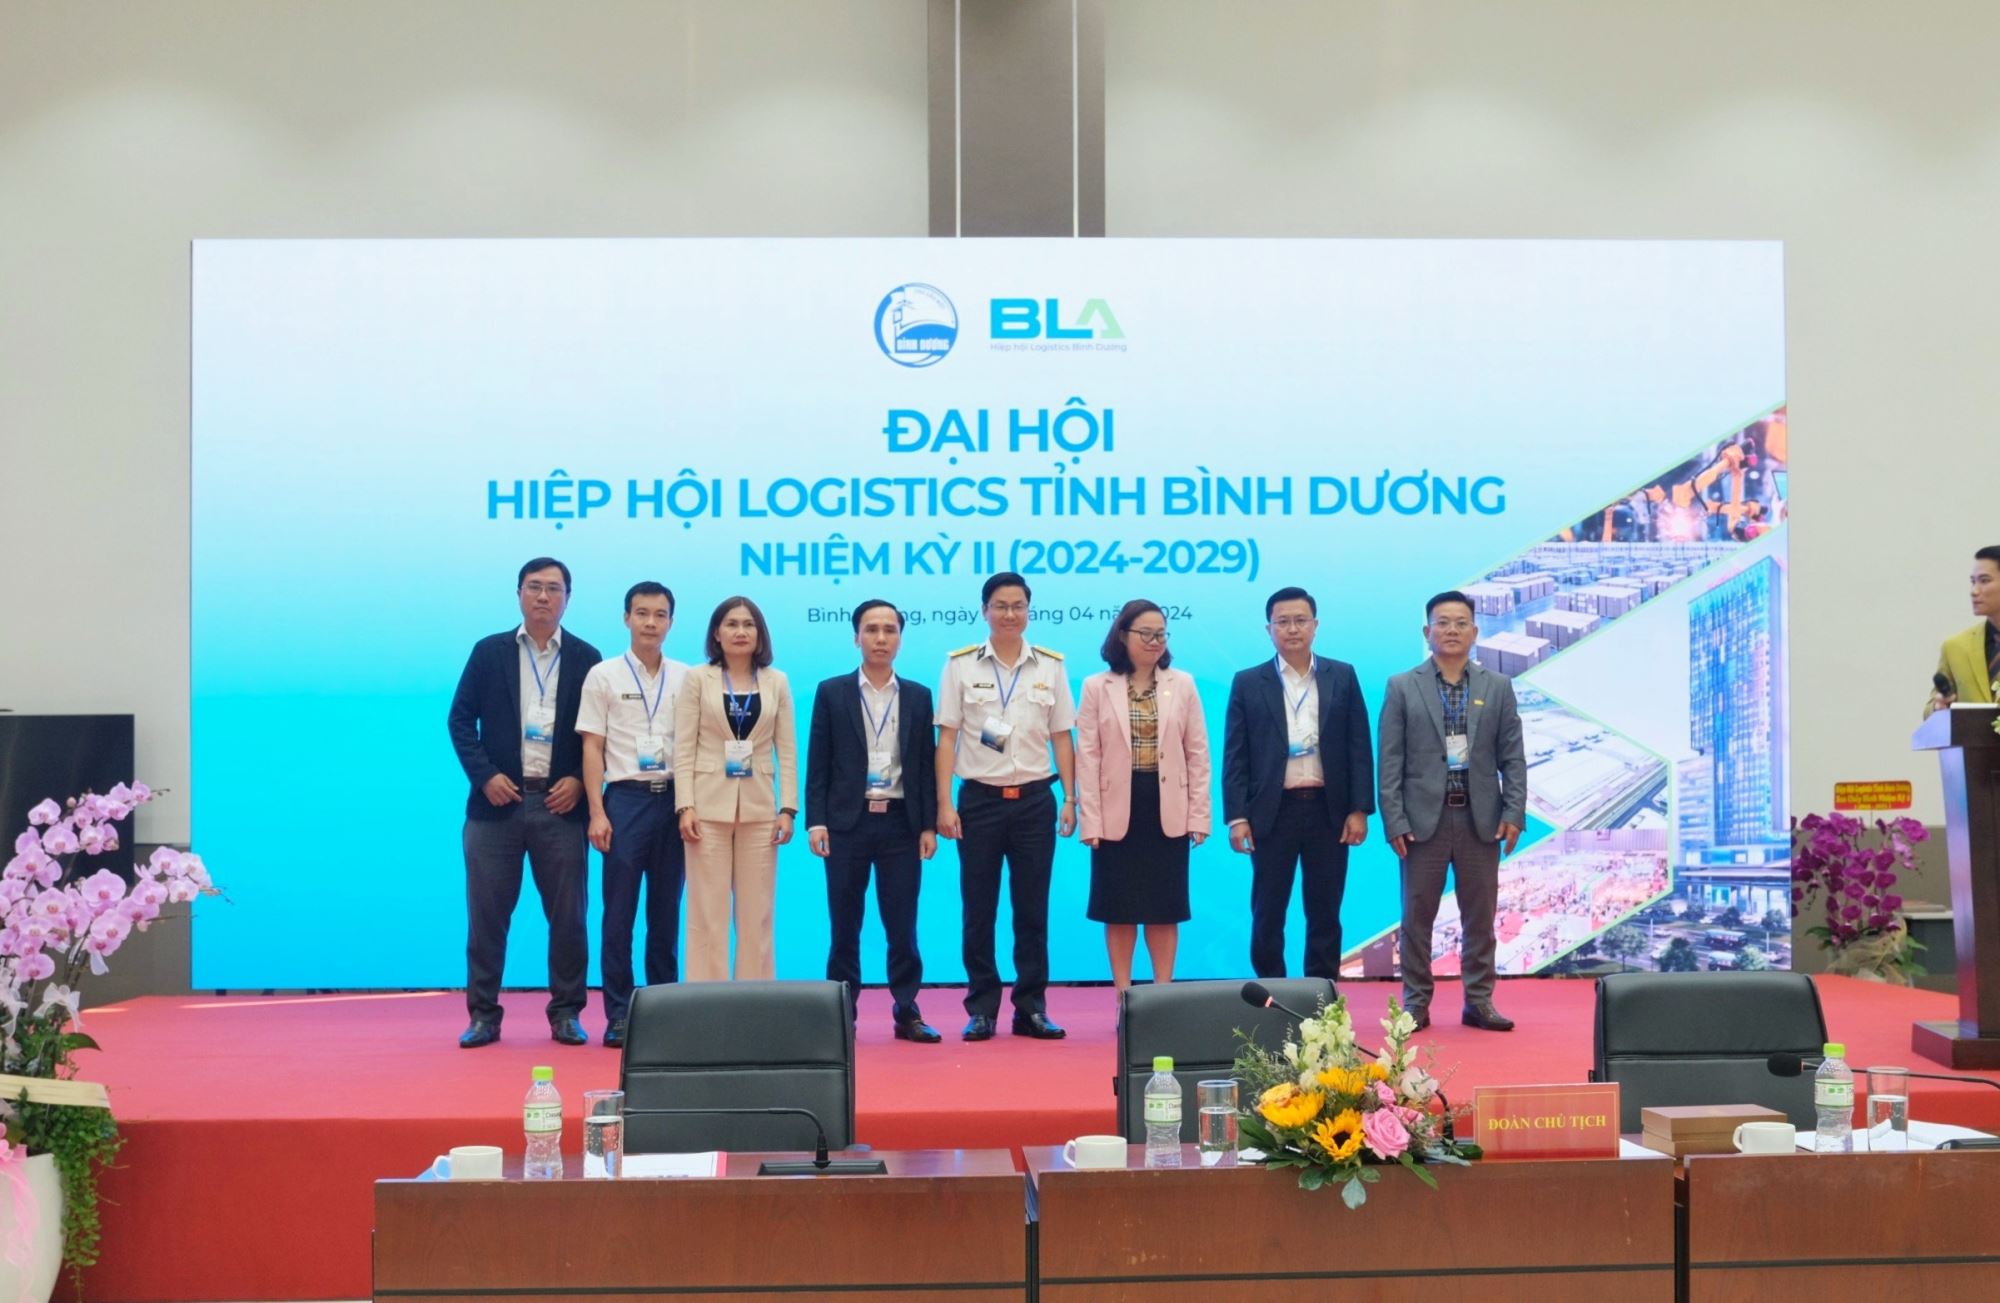 U&I Logistics Representative Elected To Executive Committee Of Binh Duong Logistics Association Period 2024 - 2029